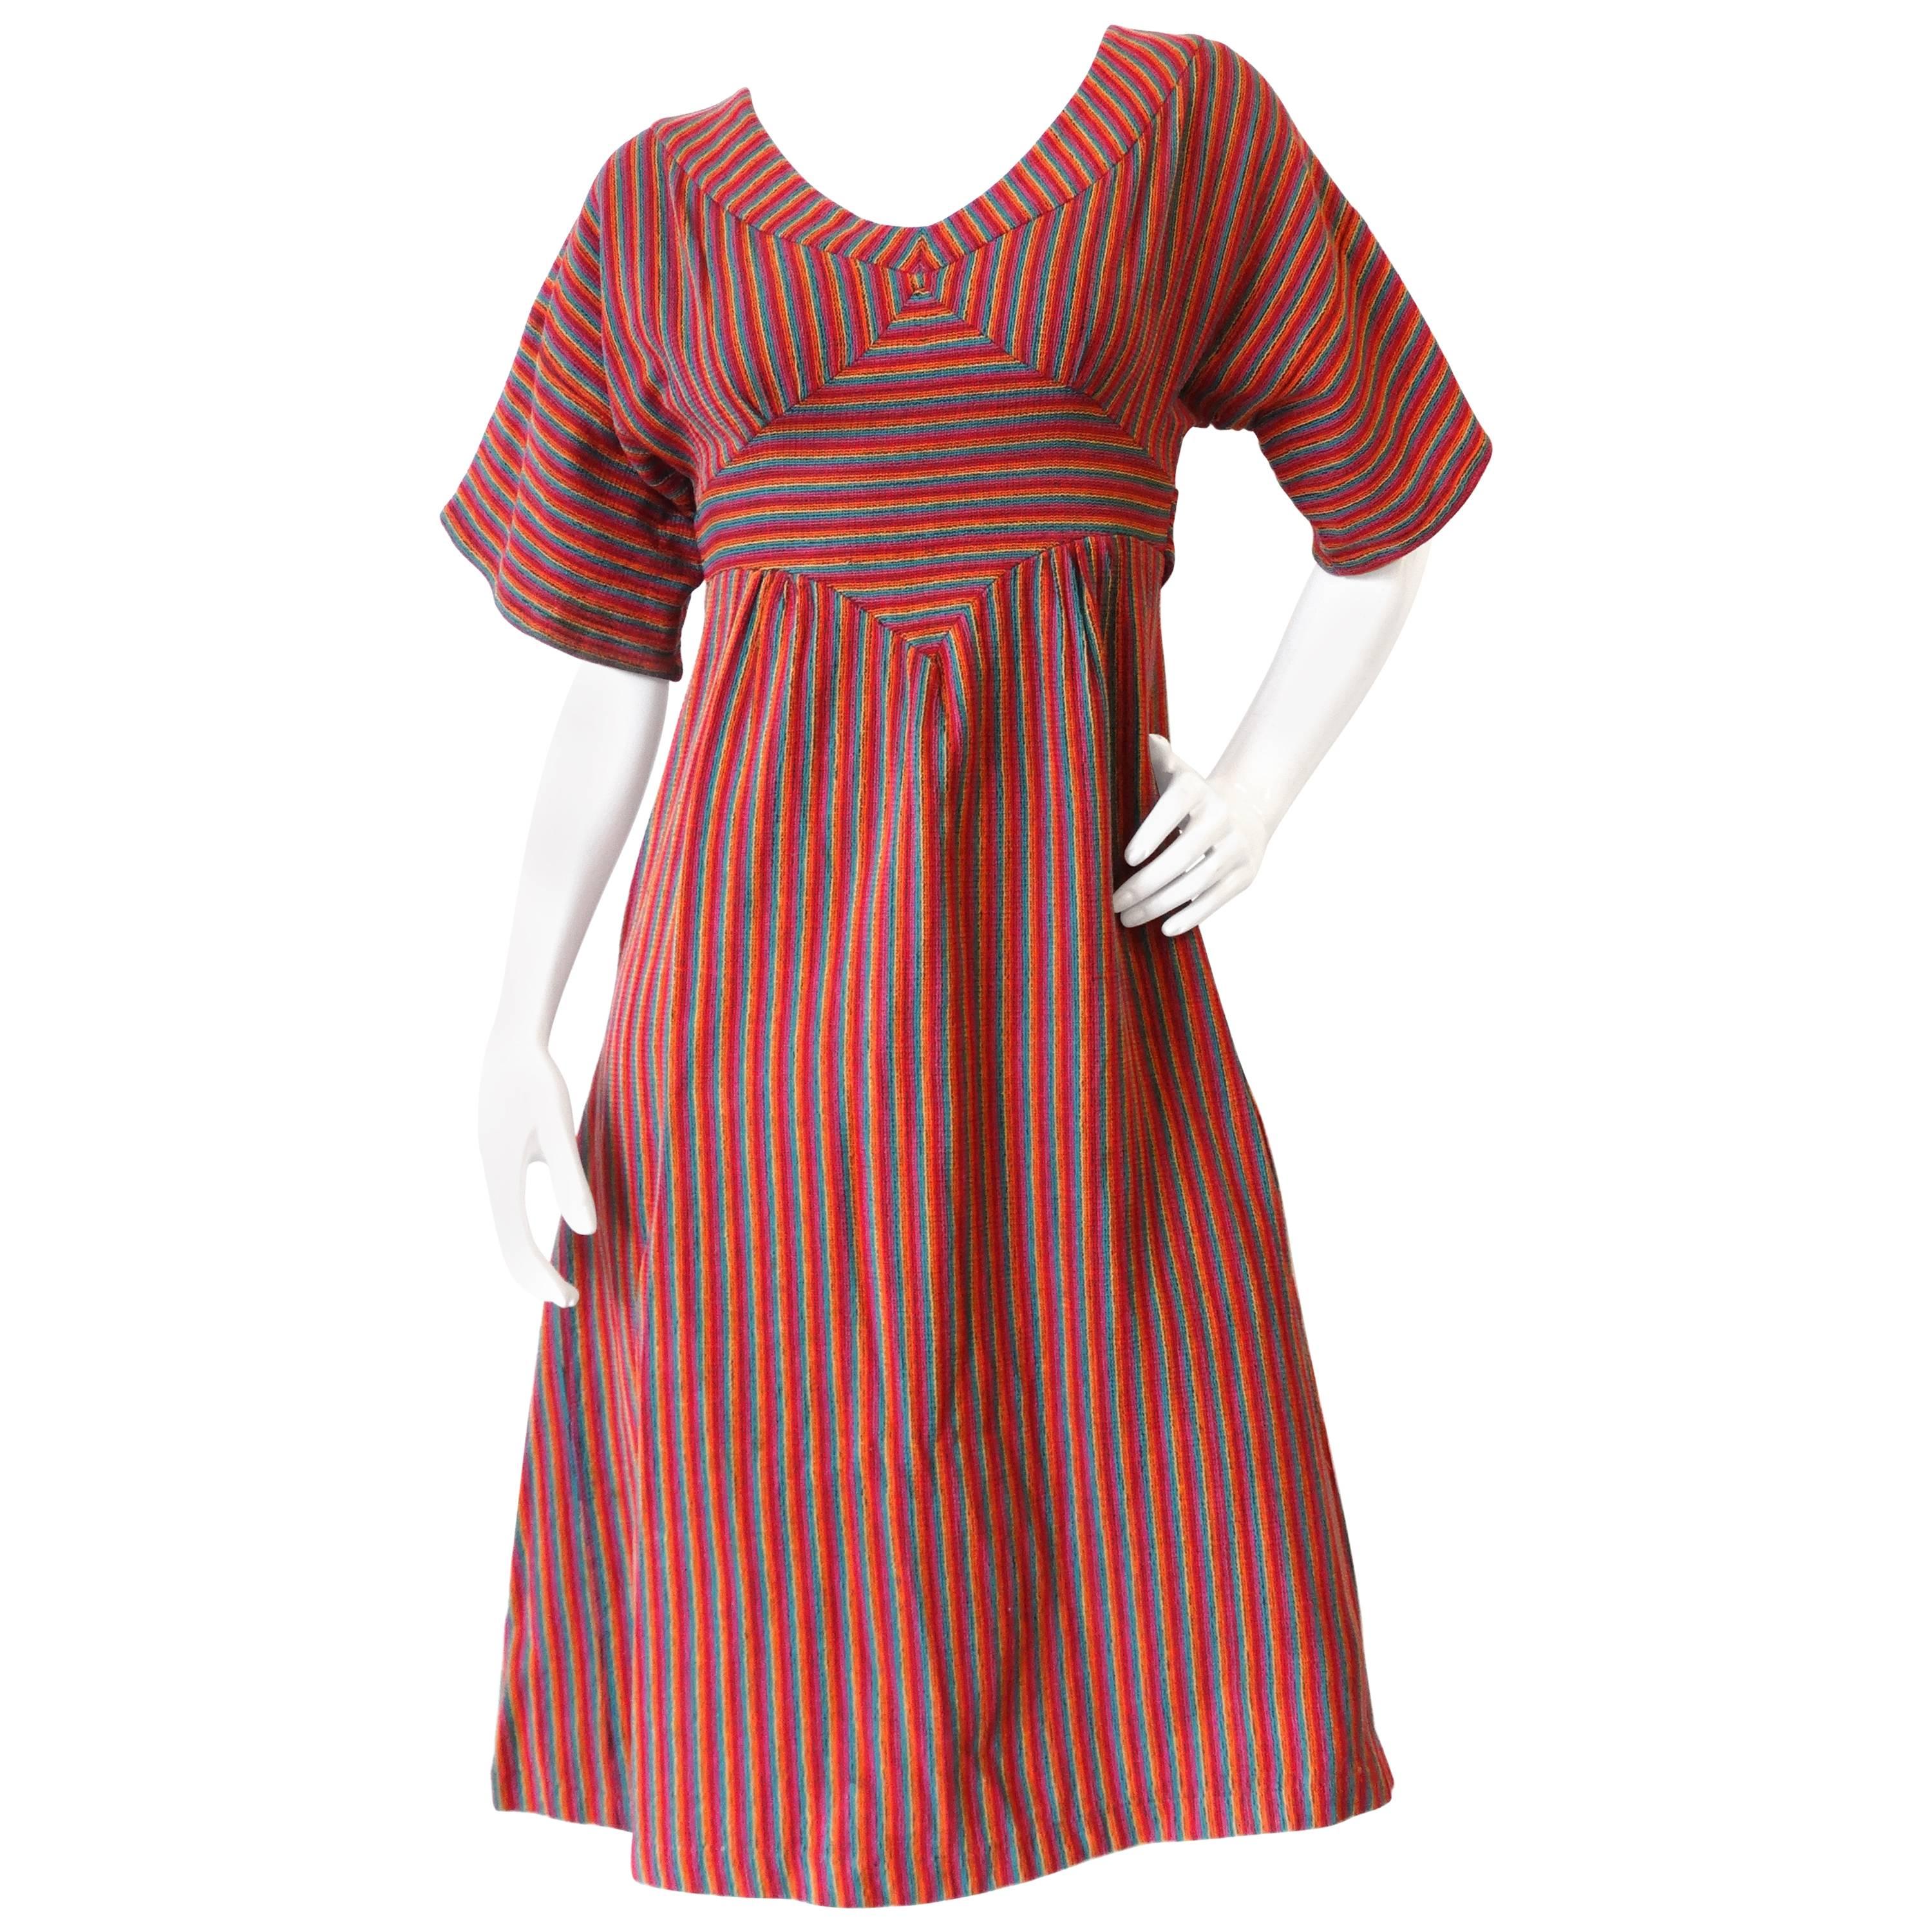 Rikma Rainbow Stripe Dress, 1970s 